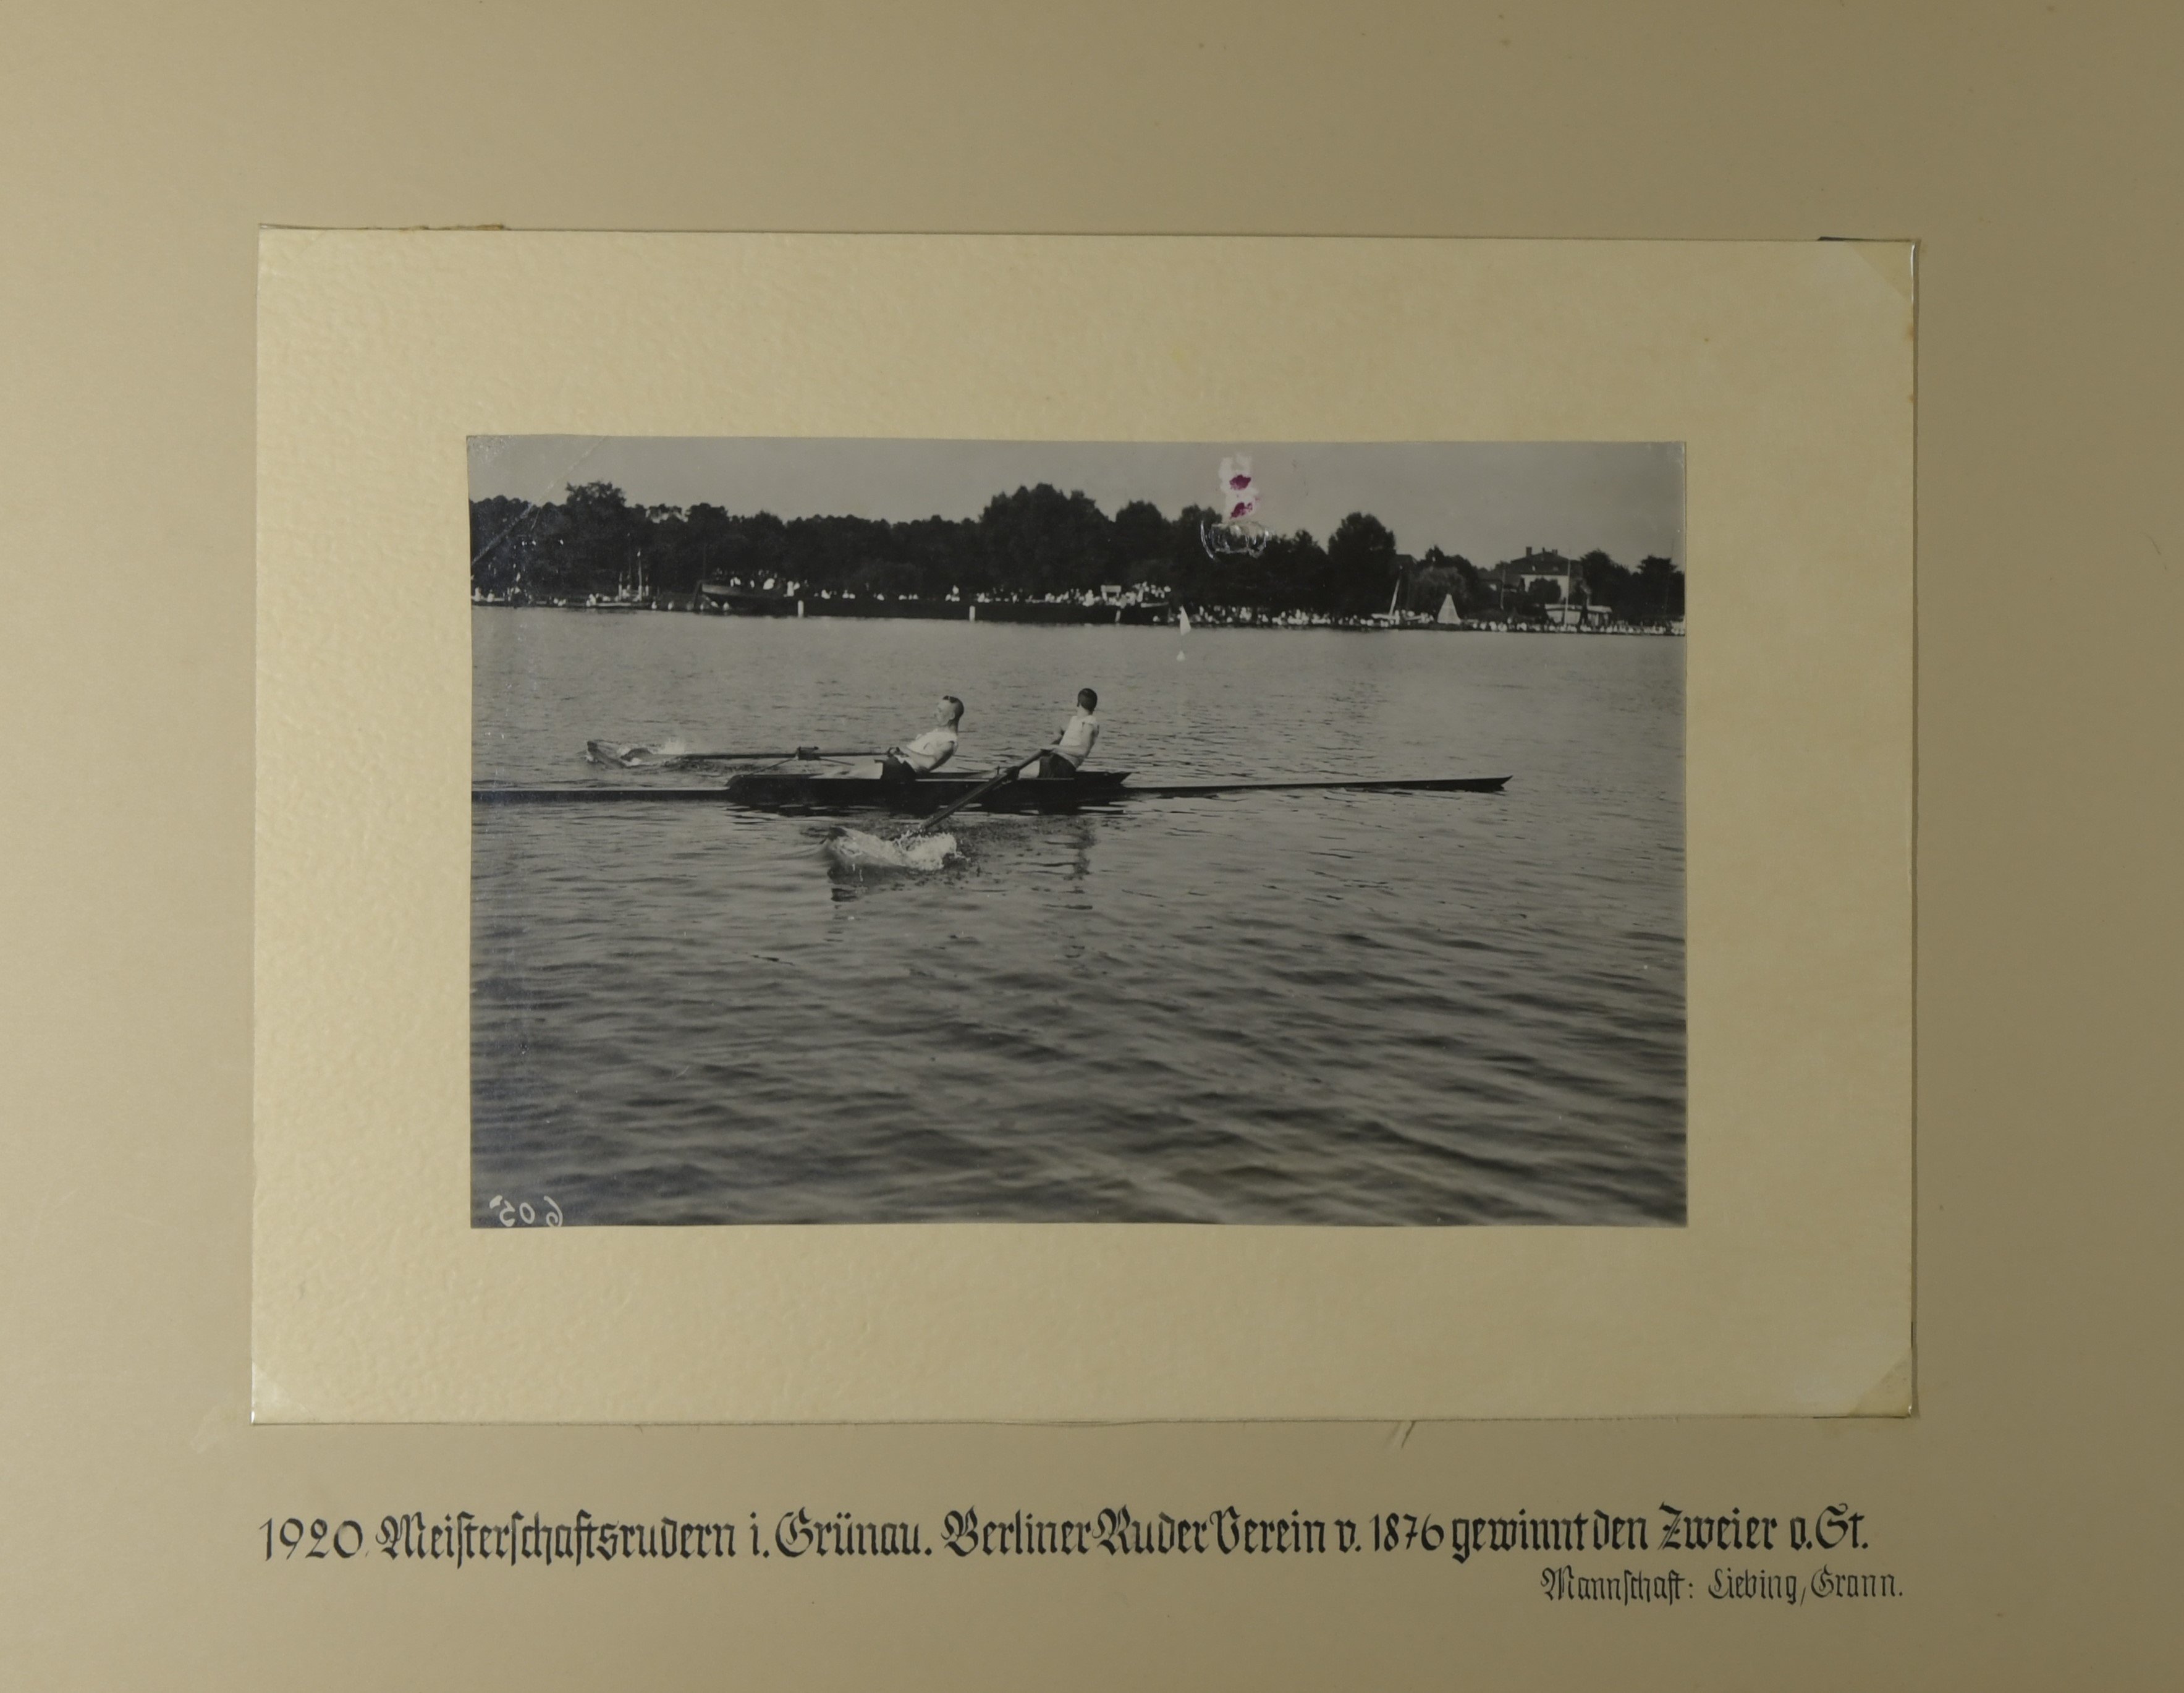 Album des Berliner Ruder-Vereins von 1976 e.V.; Meisterschaftsrudern in Grünau 1920 (Sportmuseum Berlin CC0)